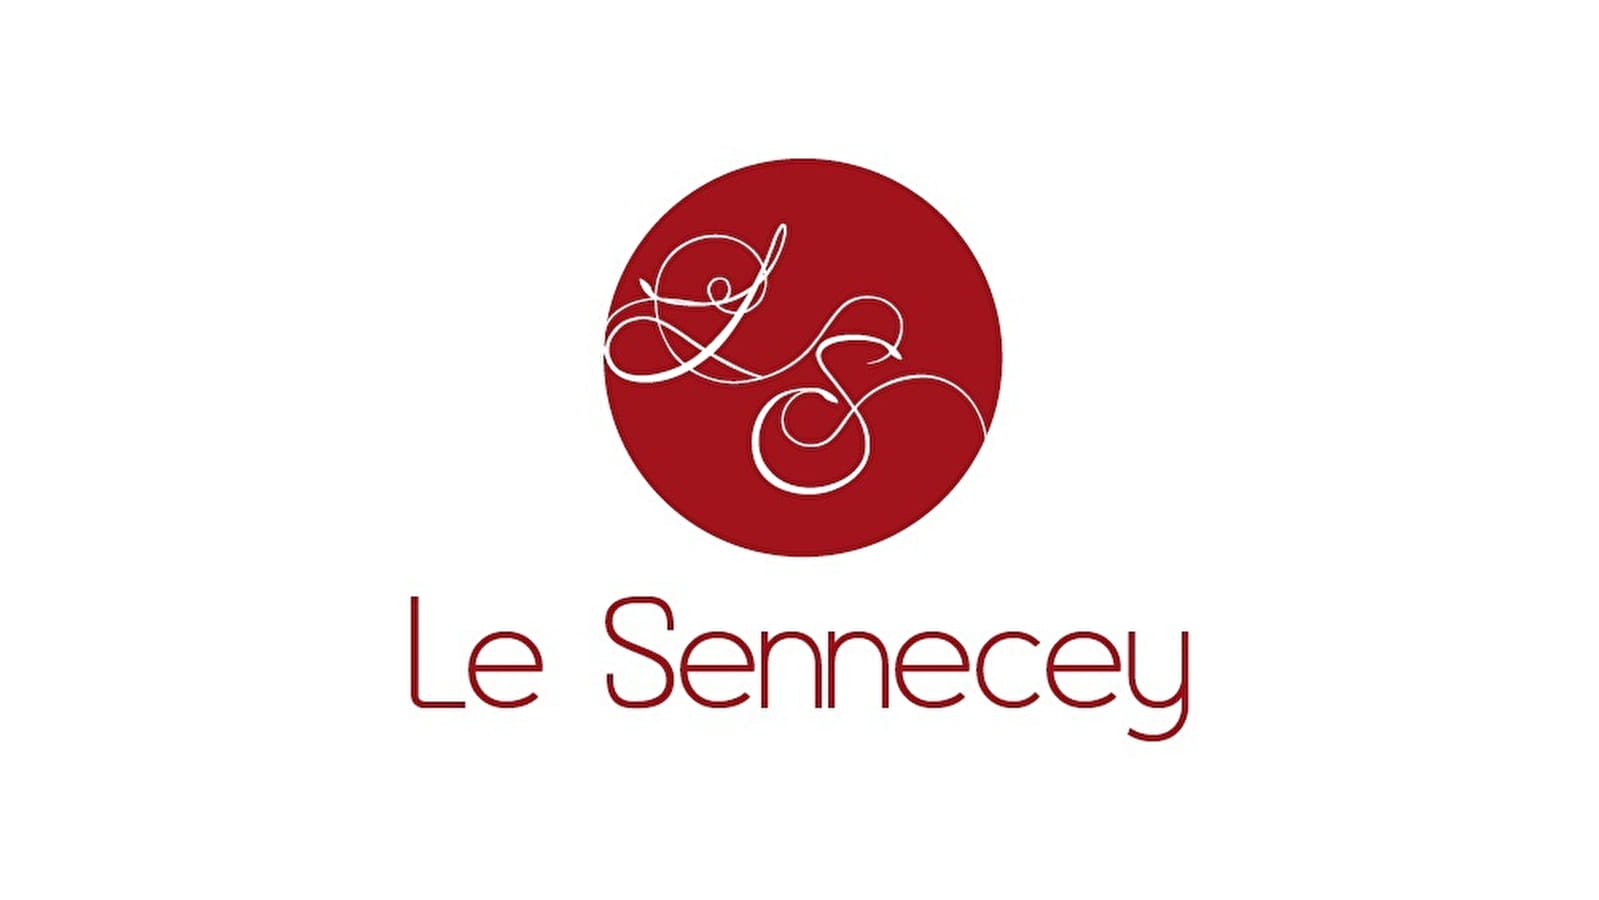 Le Sennecey